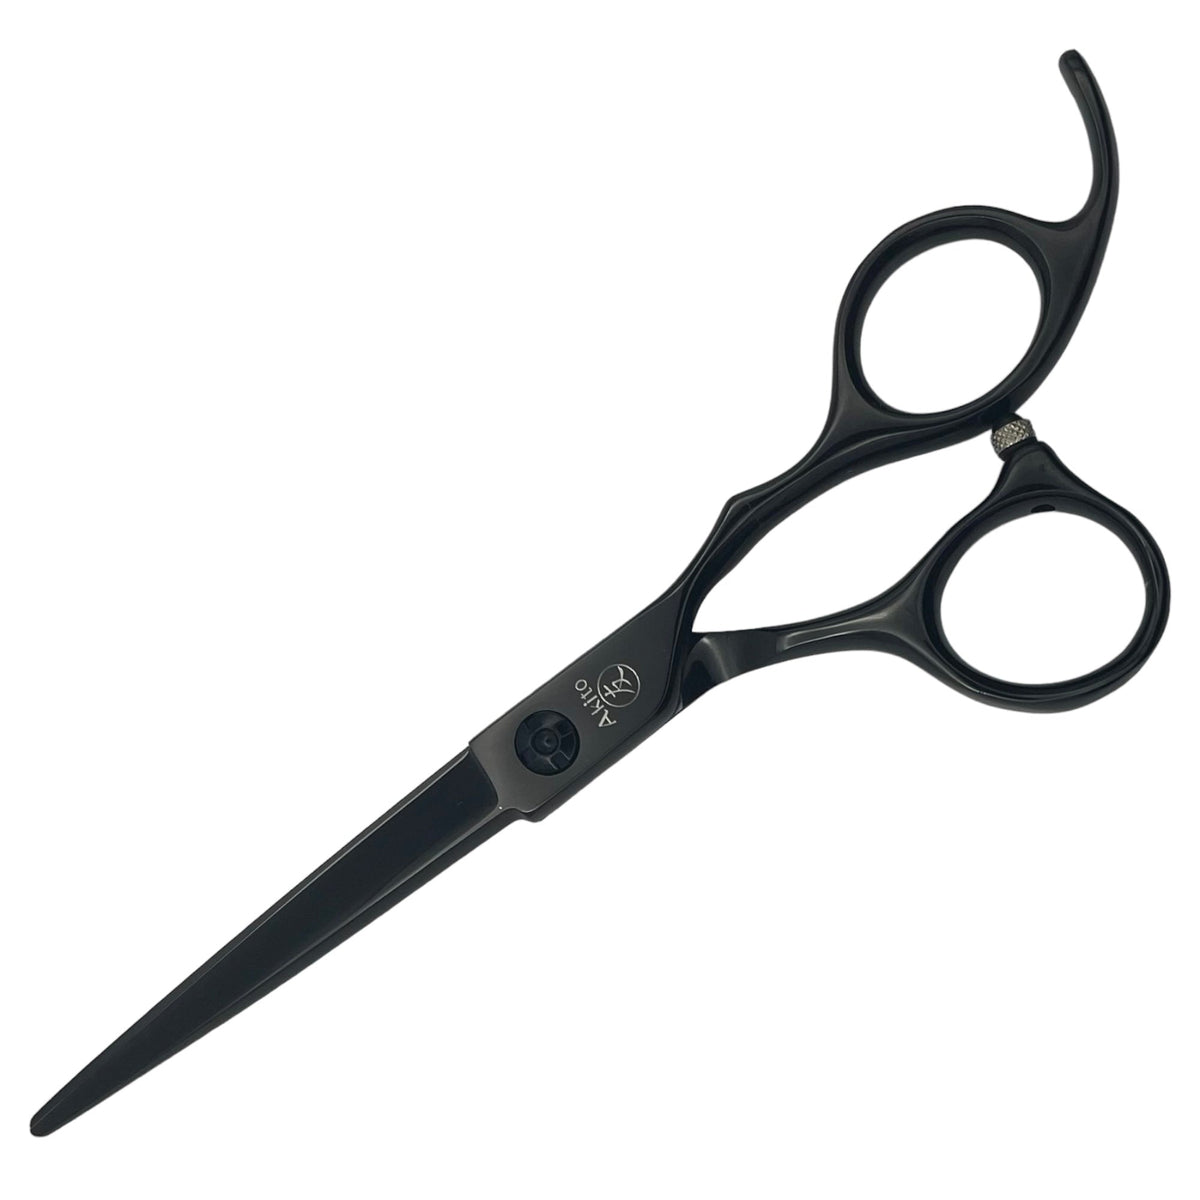 F-2 Hairdressing Scissors in black